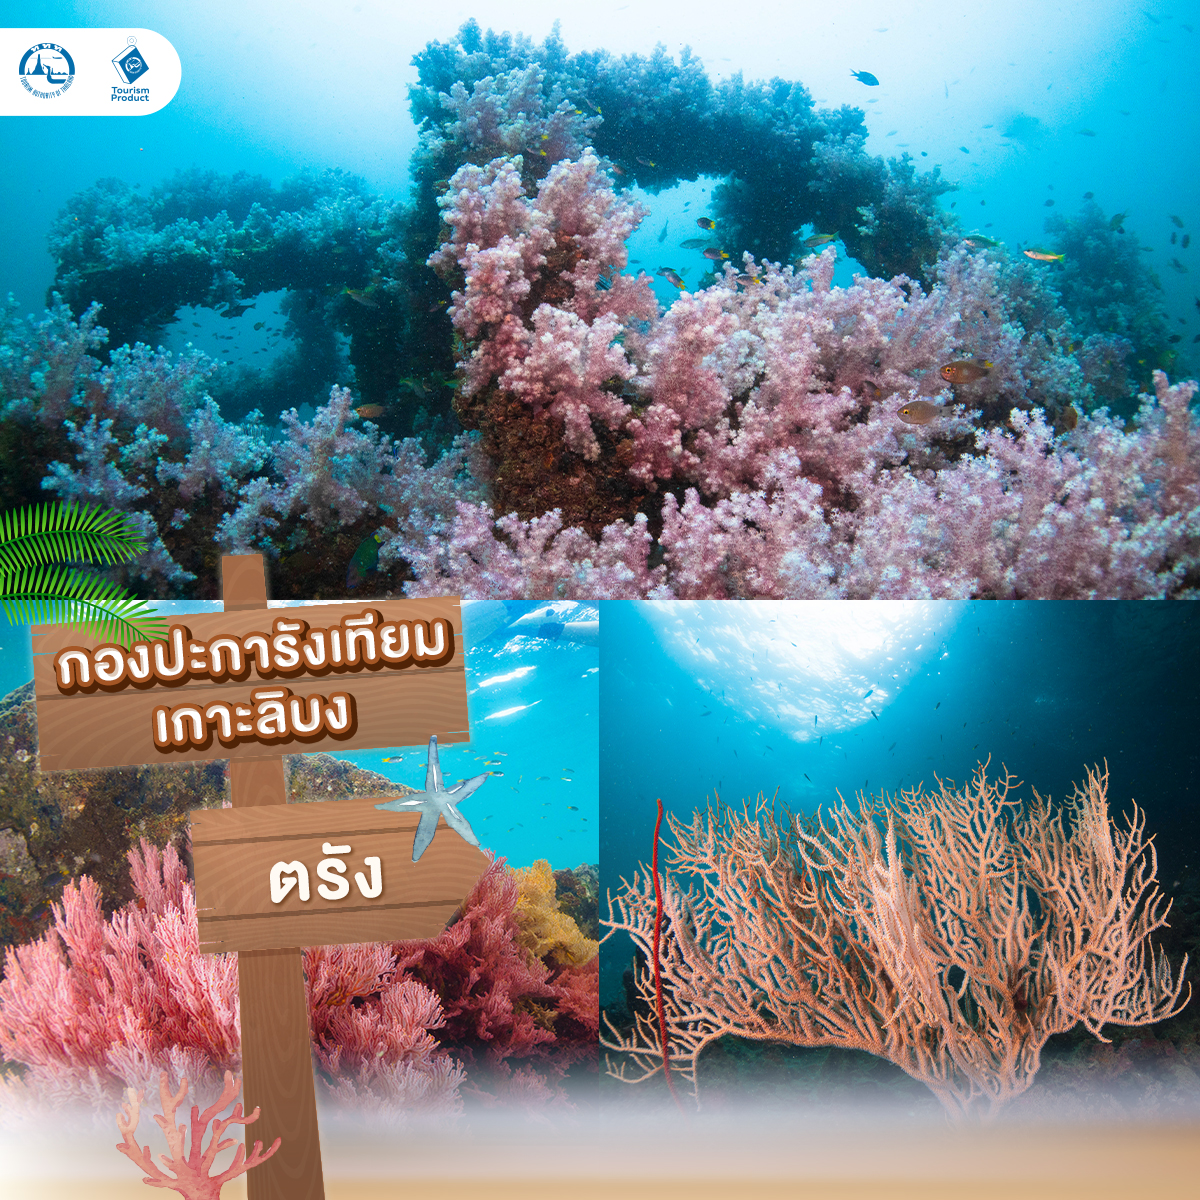 ปัก 5 จุดดำน้ำในไทย สายเเกร่งต้องไป กองปะการังเทียมเกาะลิบง